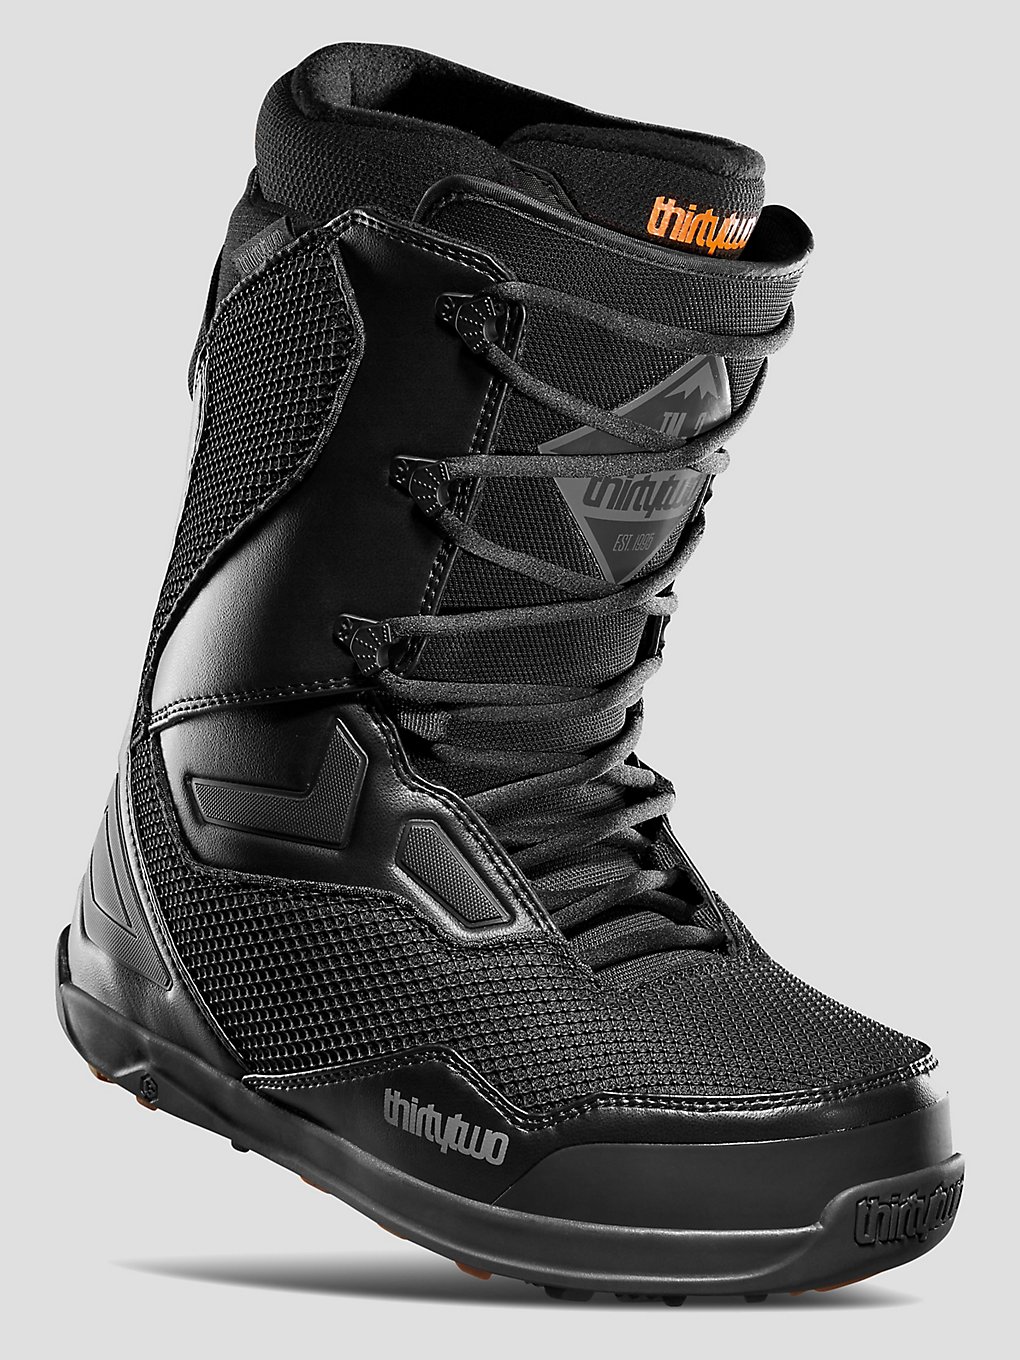 ThirtyTwo TM 2 Snowboard Boots black kaufen